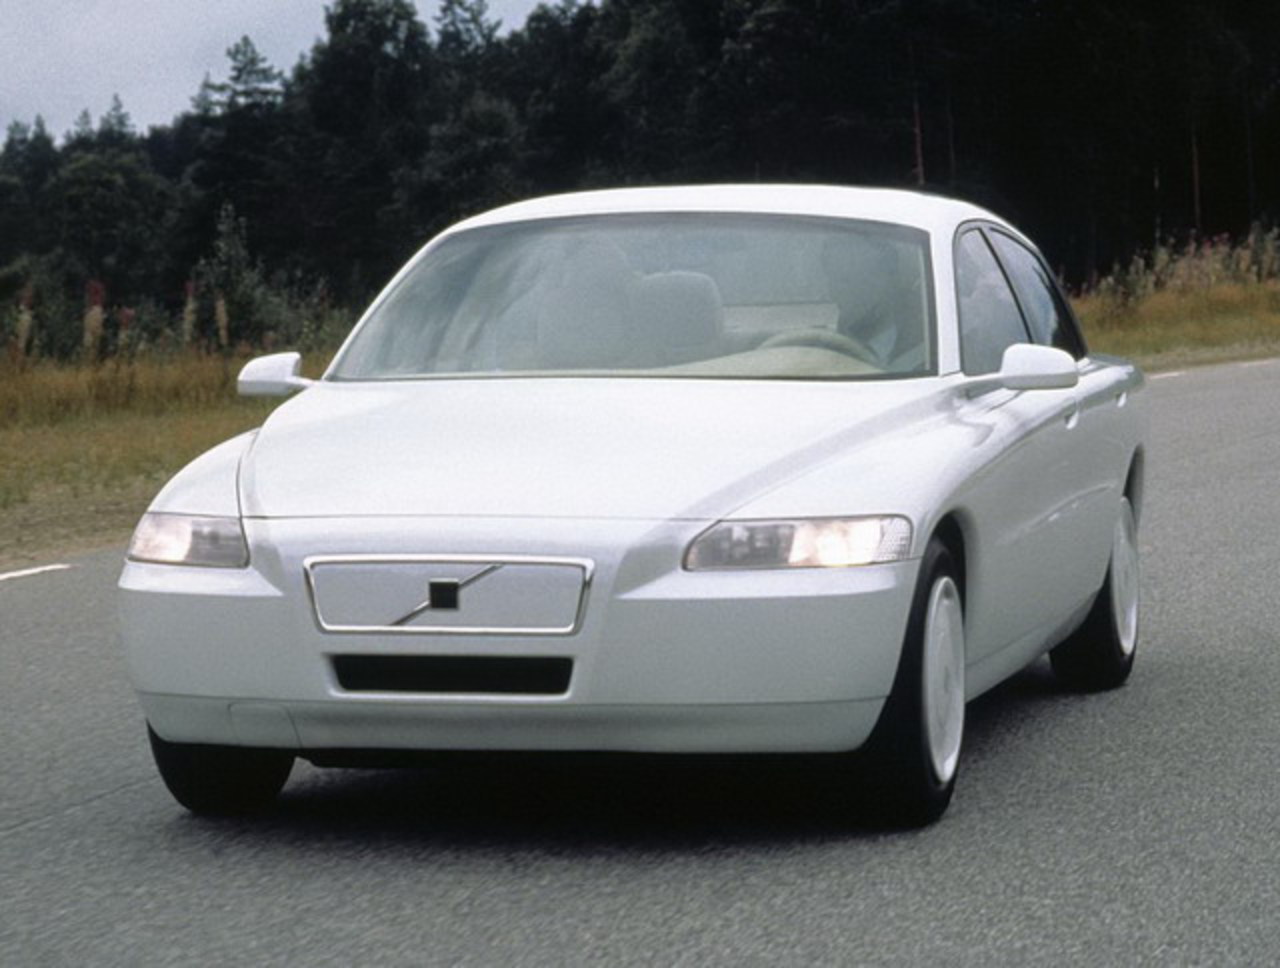 Volvo ECC Concept (1992). ÐŸÐ¾Ð´Ñ€Ð¾Ð±Ð½Ð¾ÑÑ‚Ð¸: ÐšÐ°Ñ‚ÐµÐ³Ð¾Ñ€Ð¸Ñ: Volvo: Ð¡Ð¾Ð·Ð´Ð°Ð½Ð¾ 01.04.2012